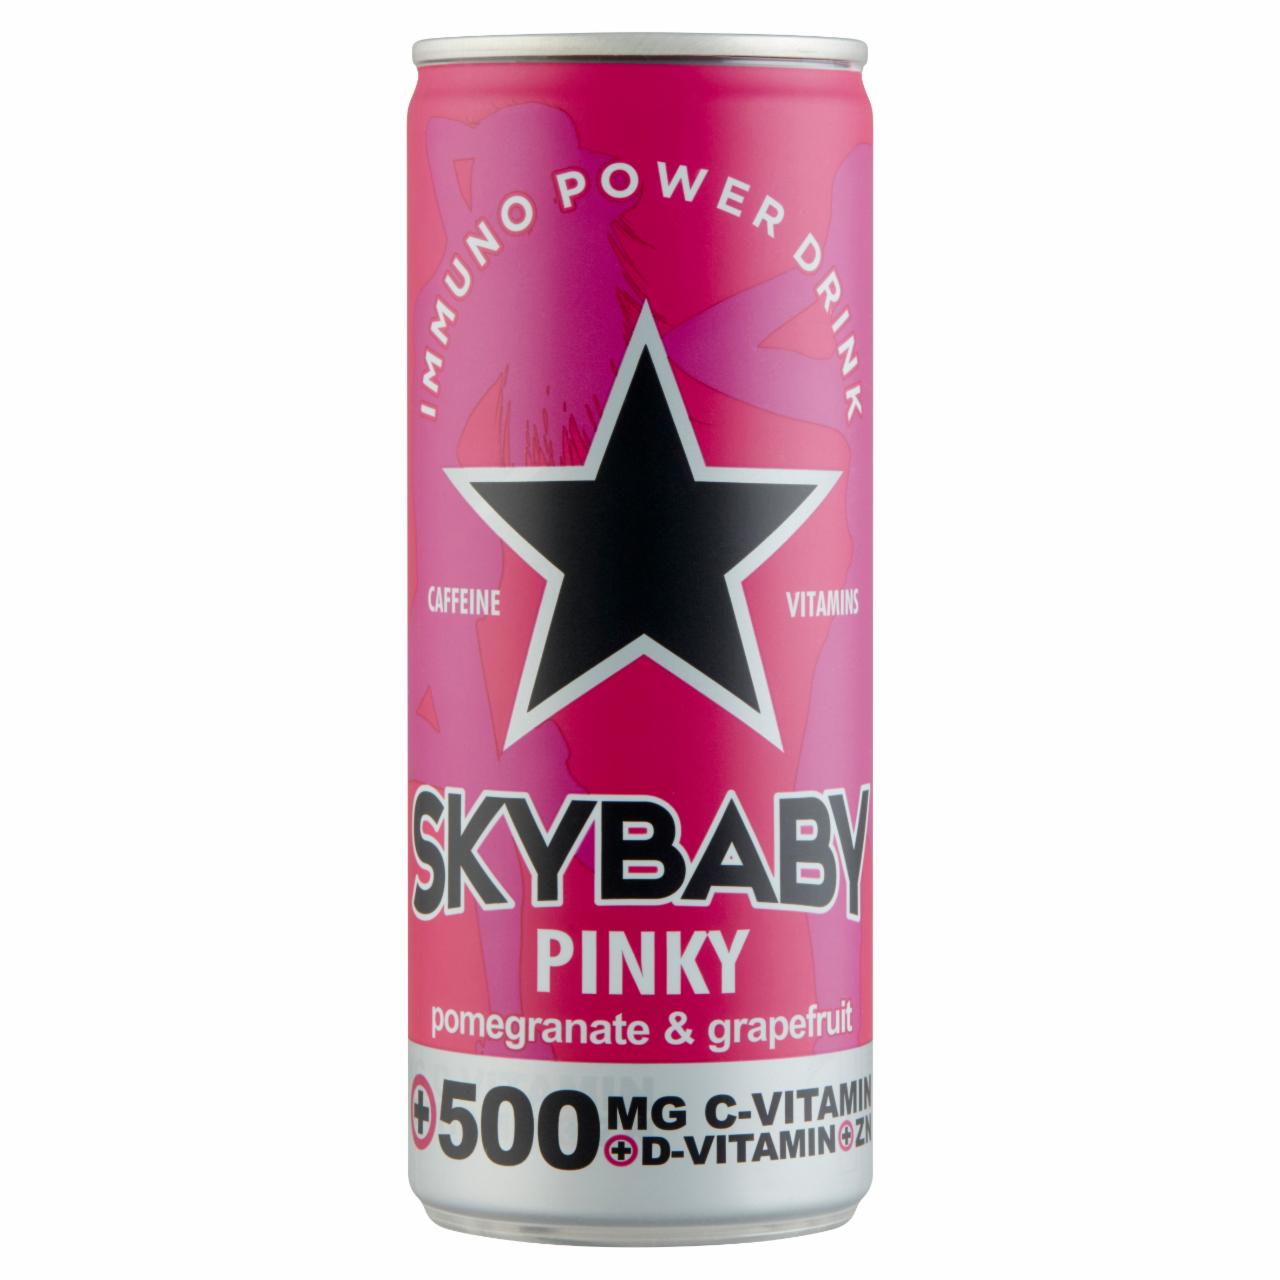 Képek - Skybaby Power Drink Pinky szénsavas grapefruit és gránátalma ízű alkoholmentes ital 0,25 l